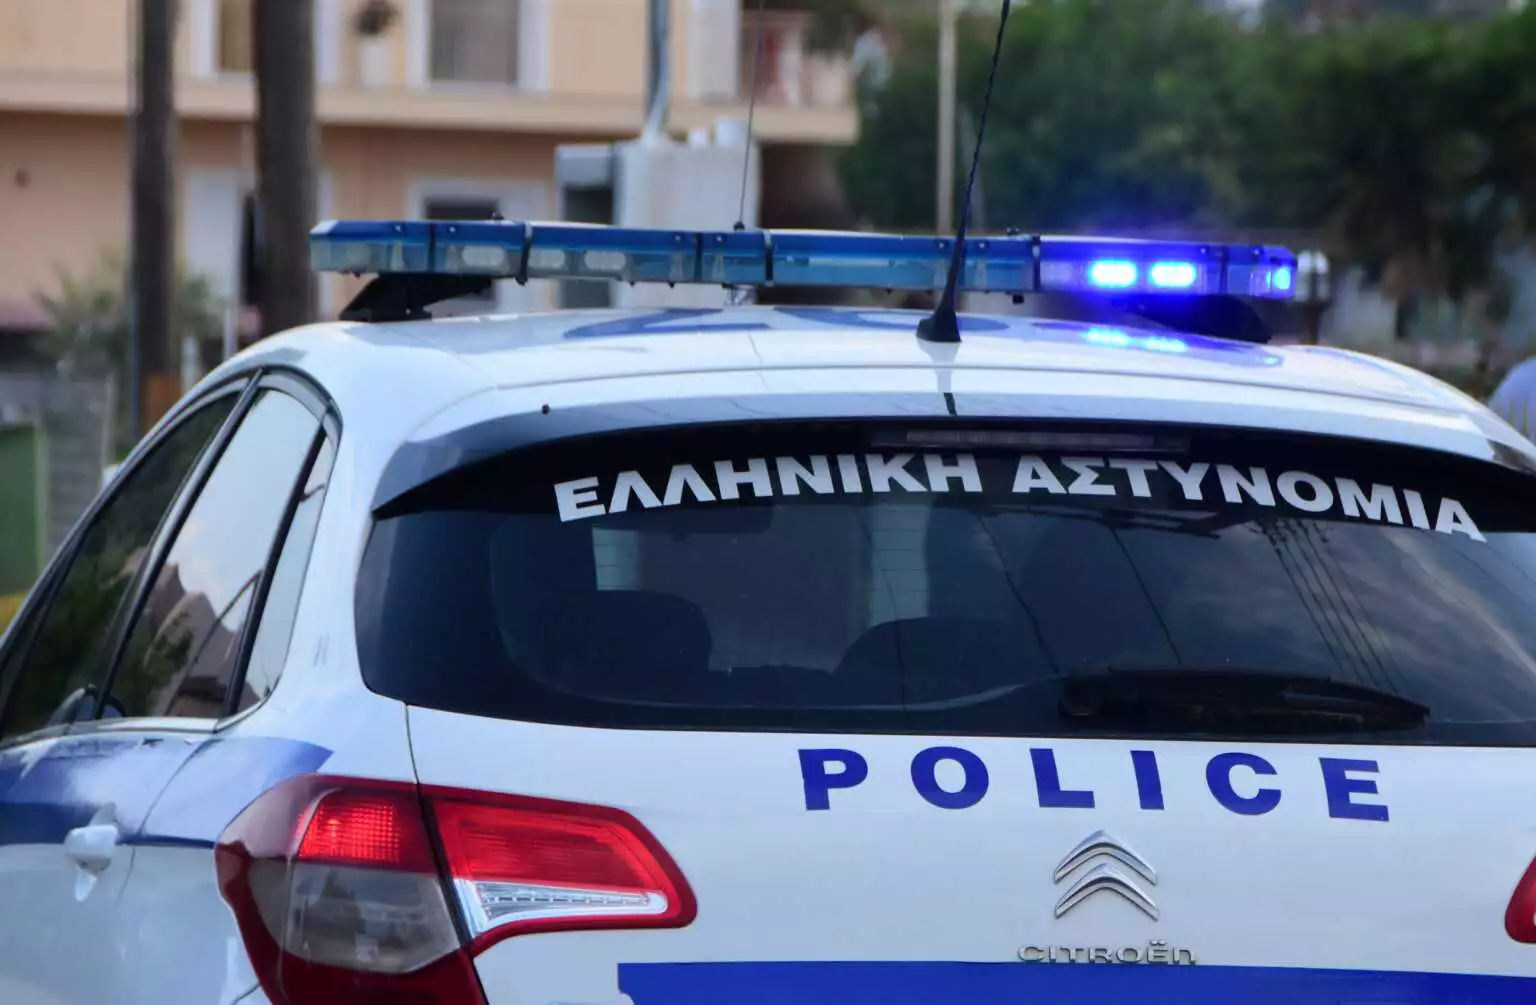 Απαγόρευση των συγκεντρώσεων το Σαββατοκύριακο στην Αθήνα – Η ανακοίνωση της αστυνομίας